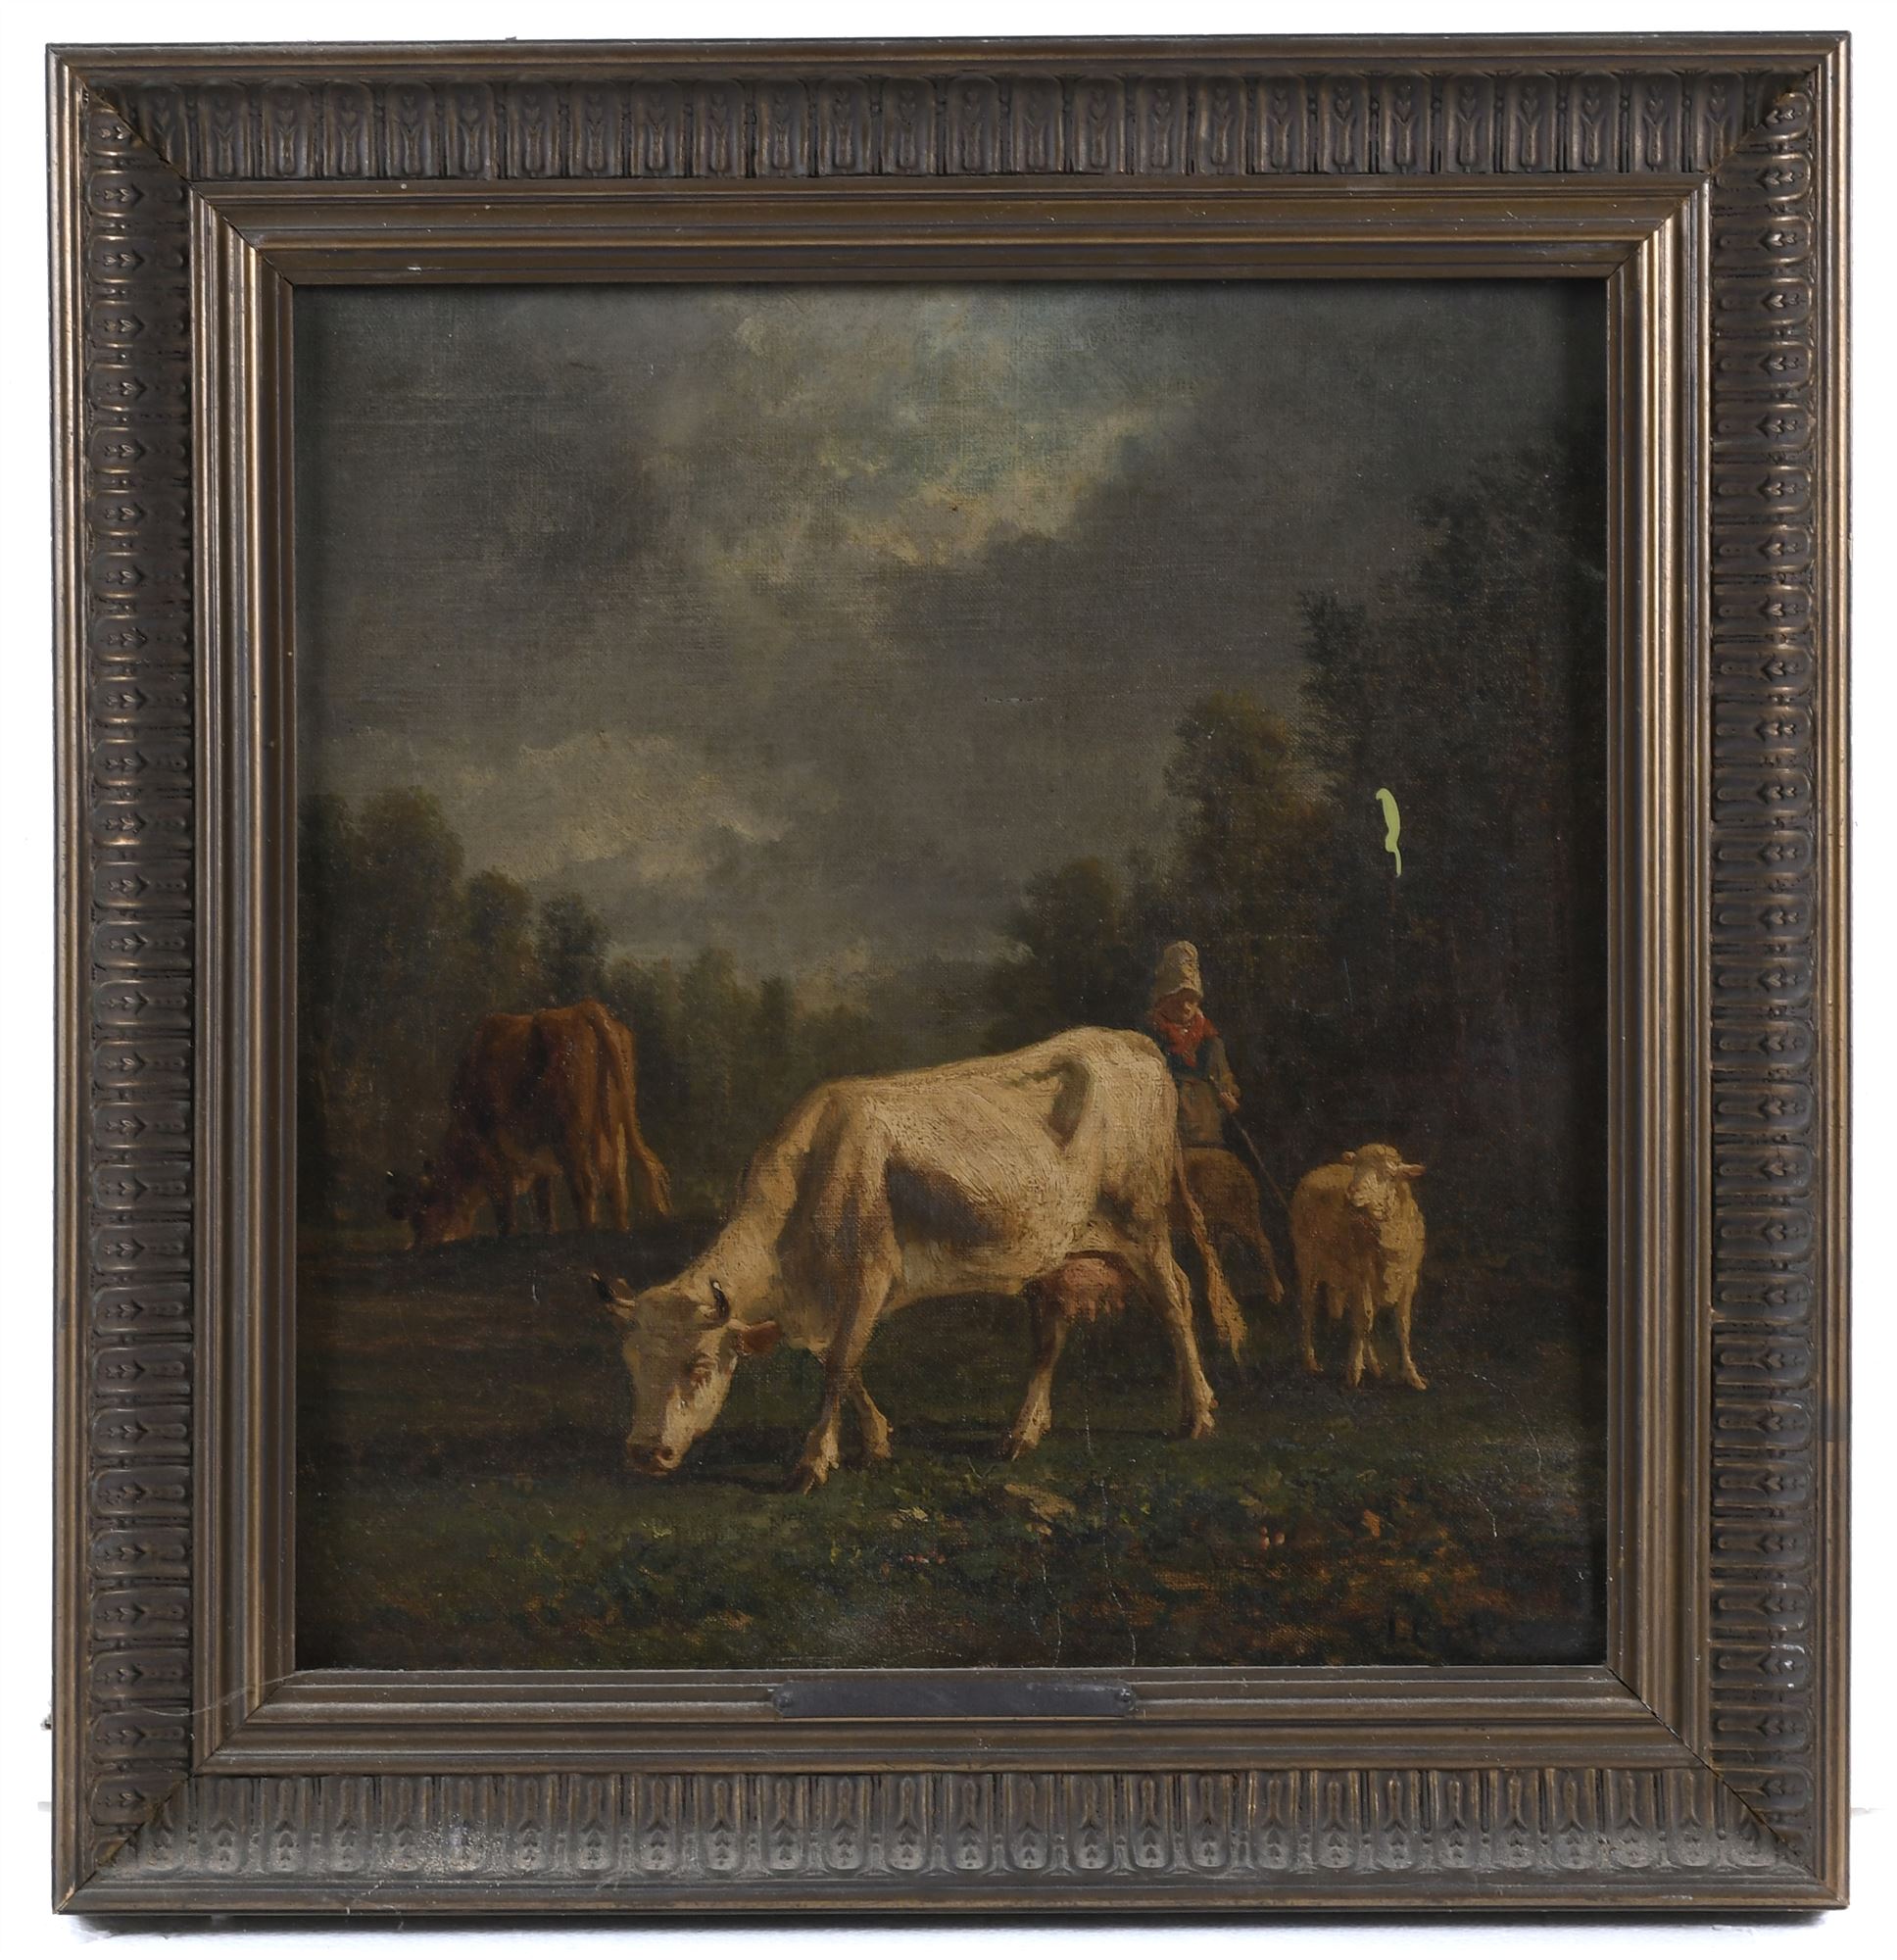 ANTONIO CORTÉS Y AGUILAR (1827-1908). "LANDSCAPE WITH COWS".